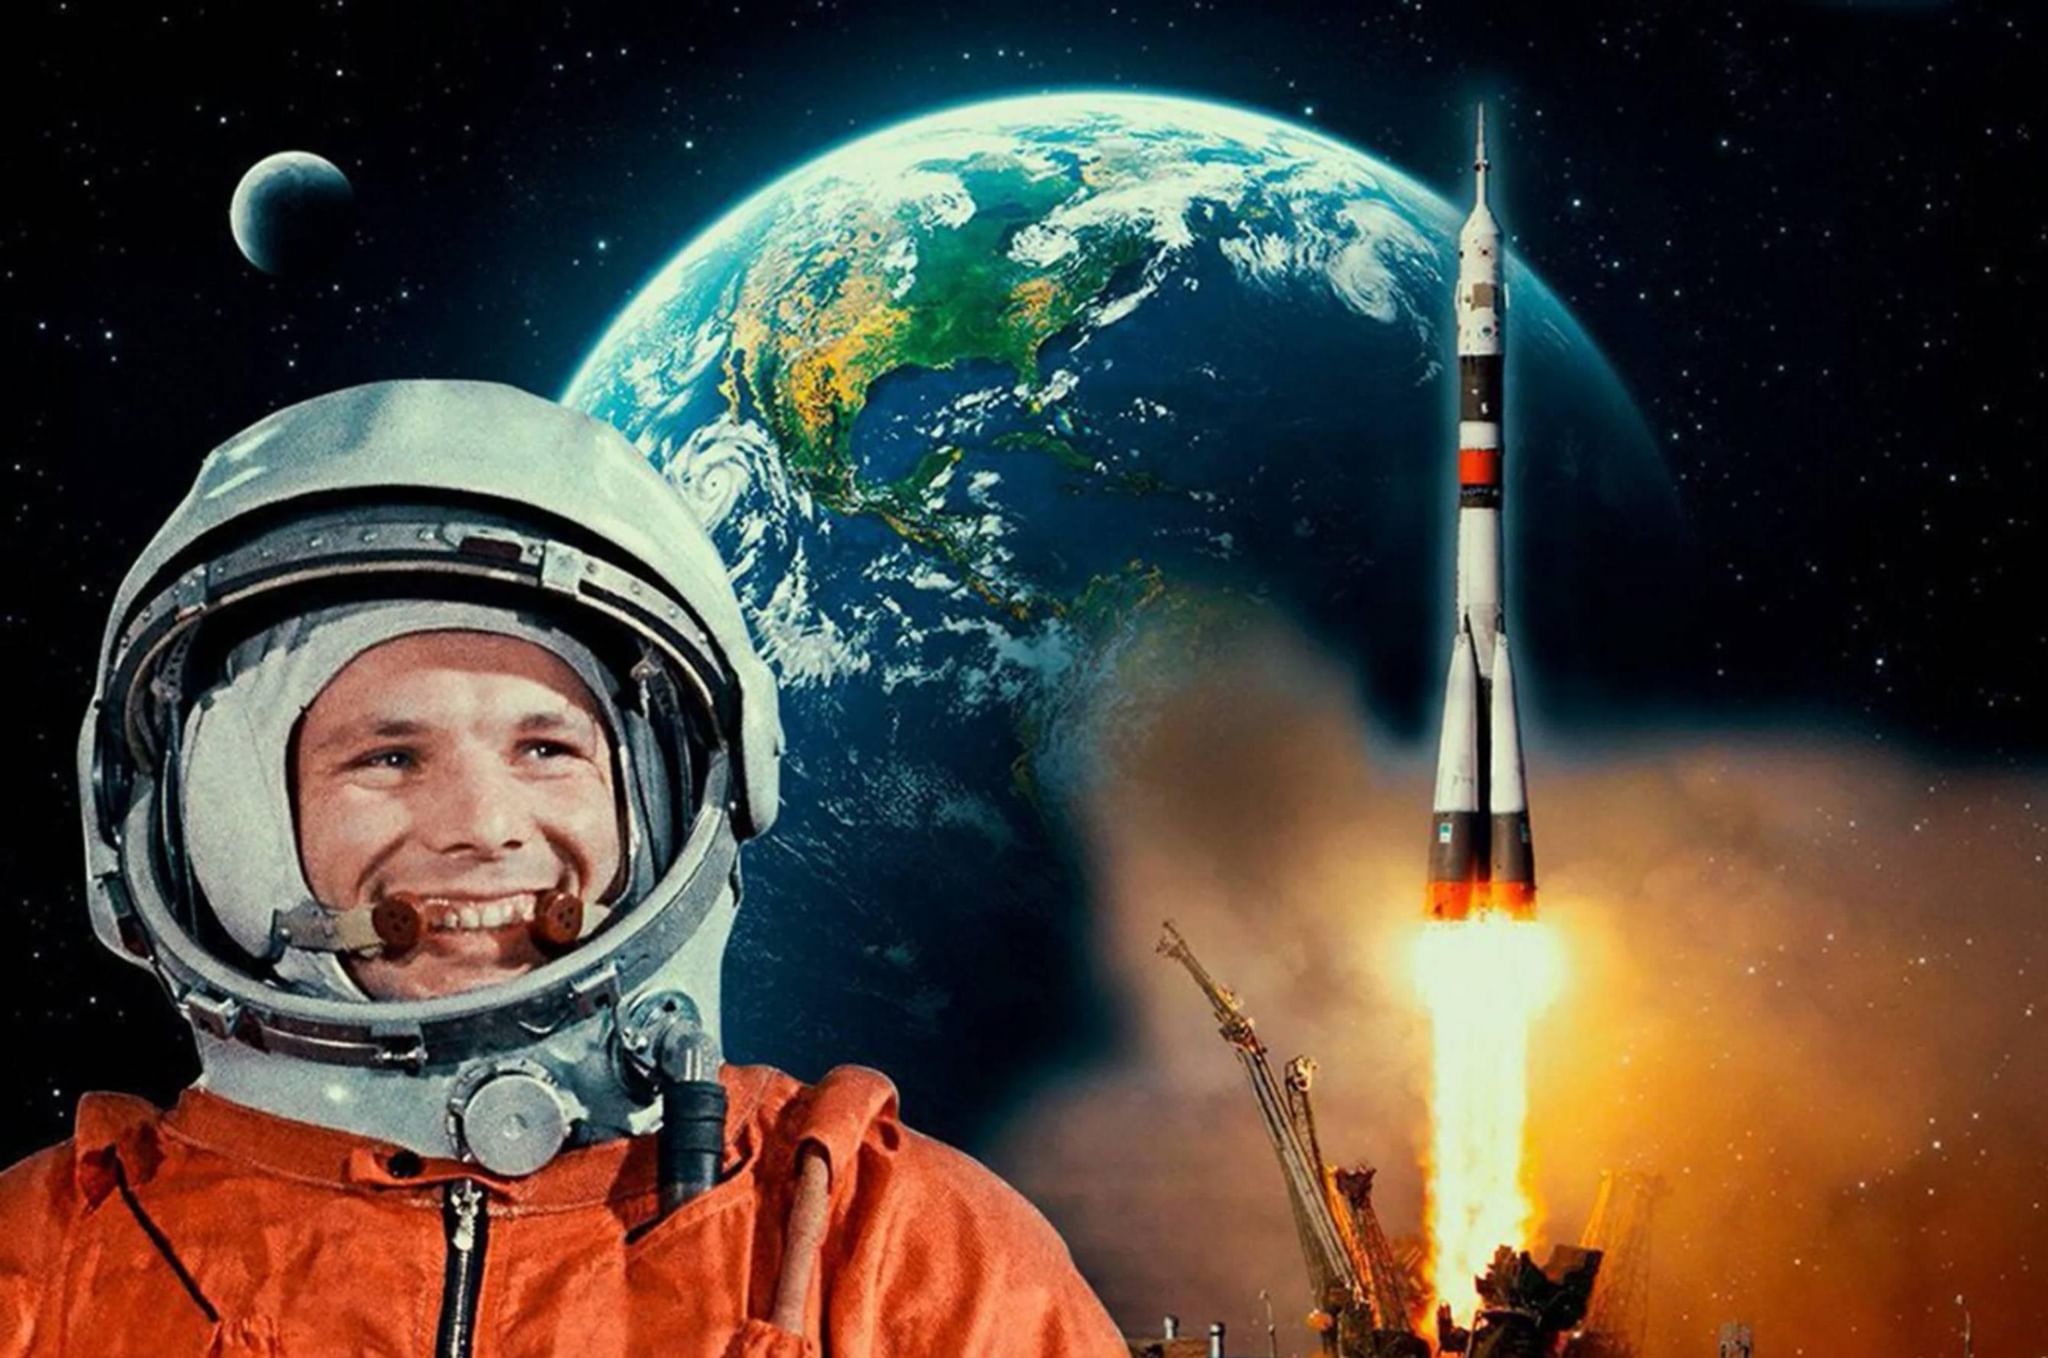 При взлете ракеты космонавт ощущает что его прижимает к креслу